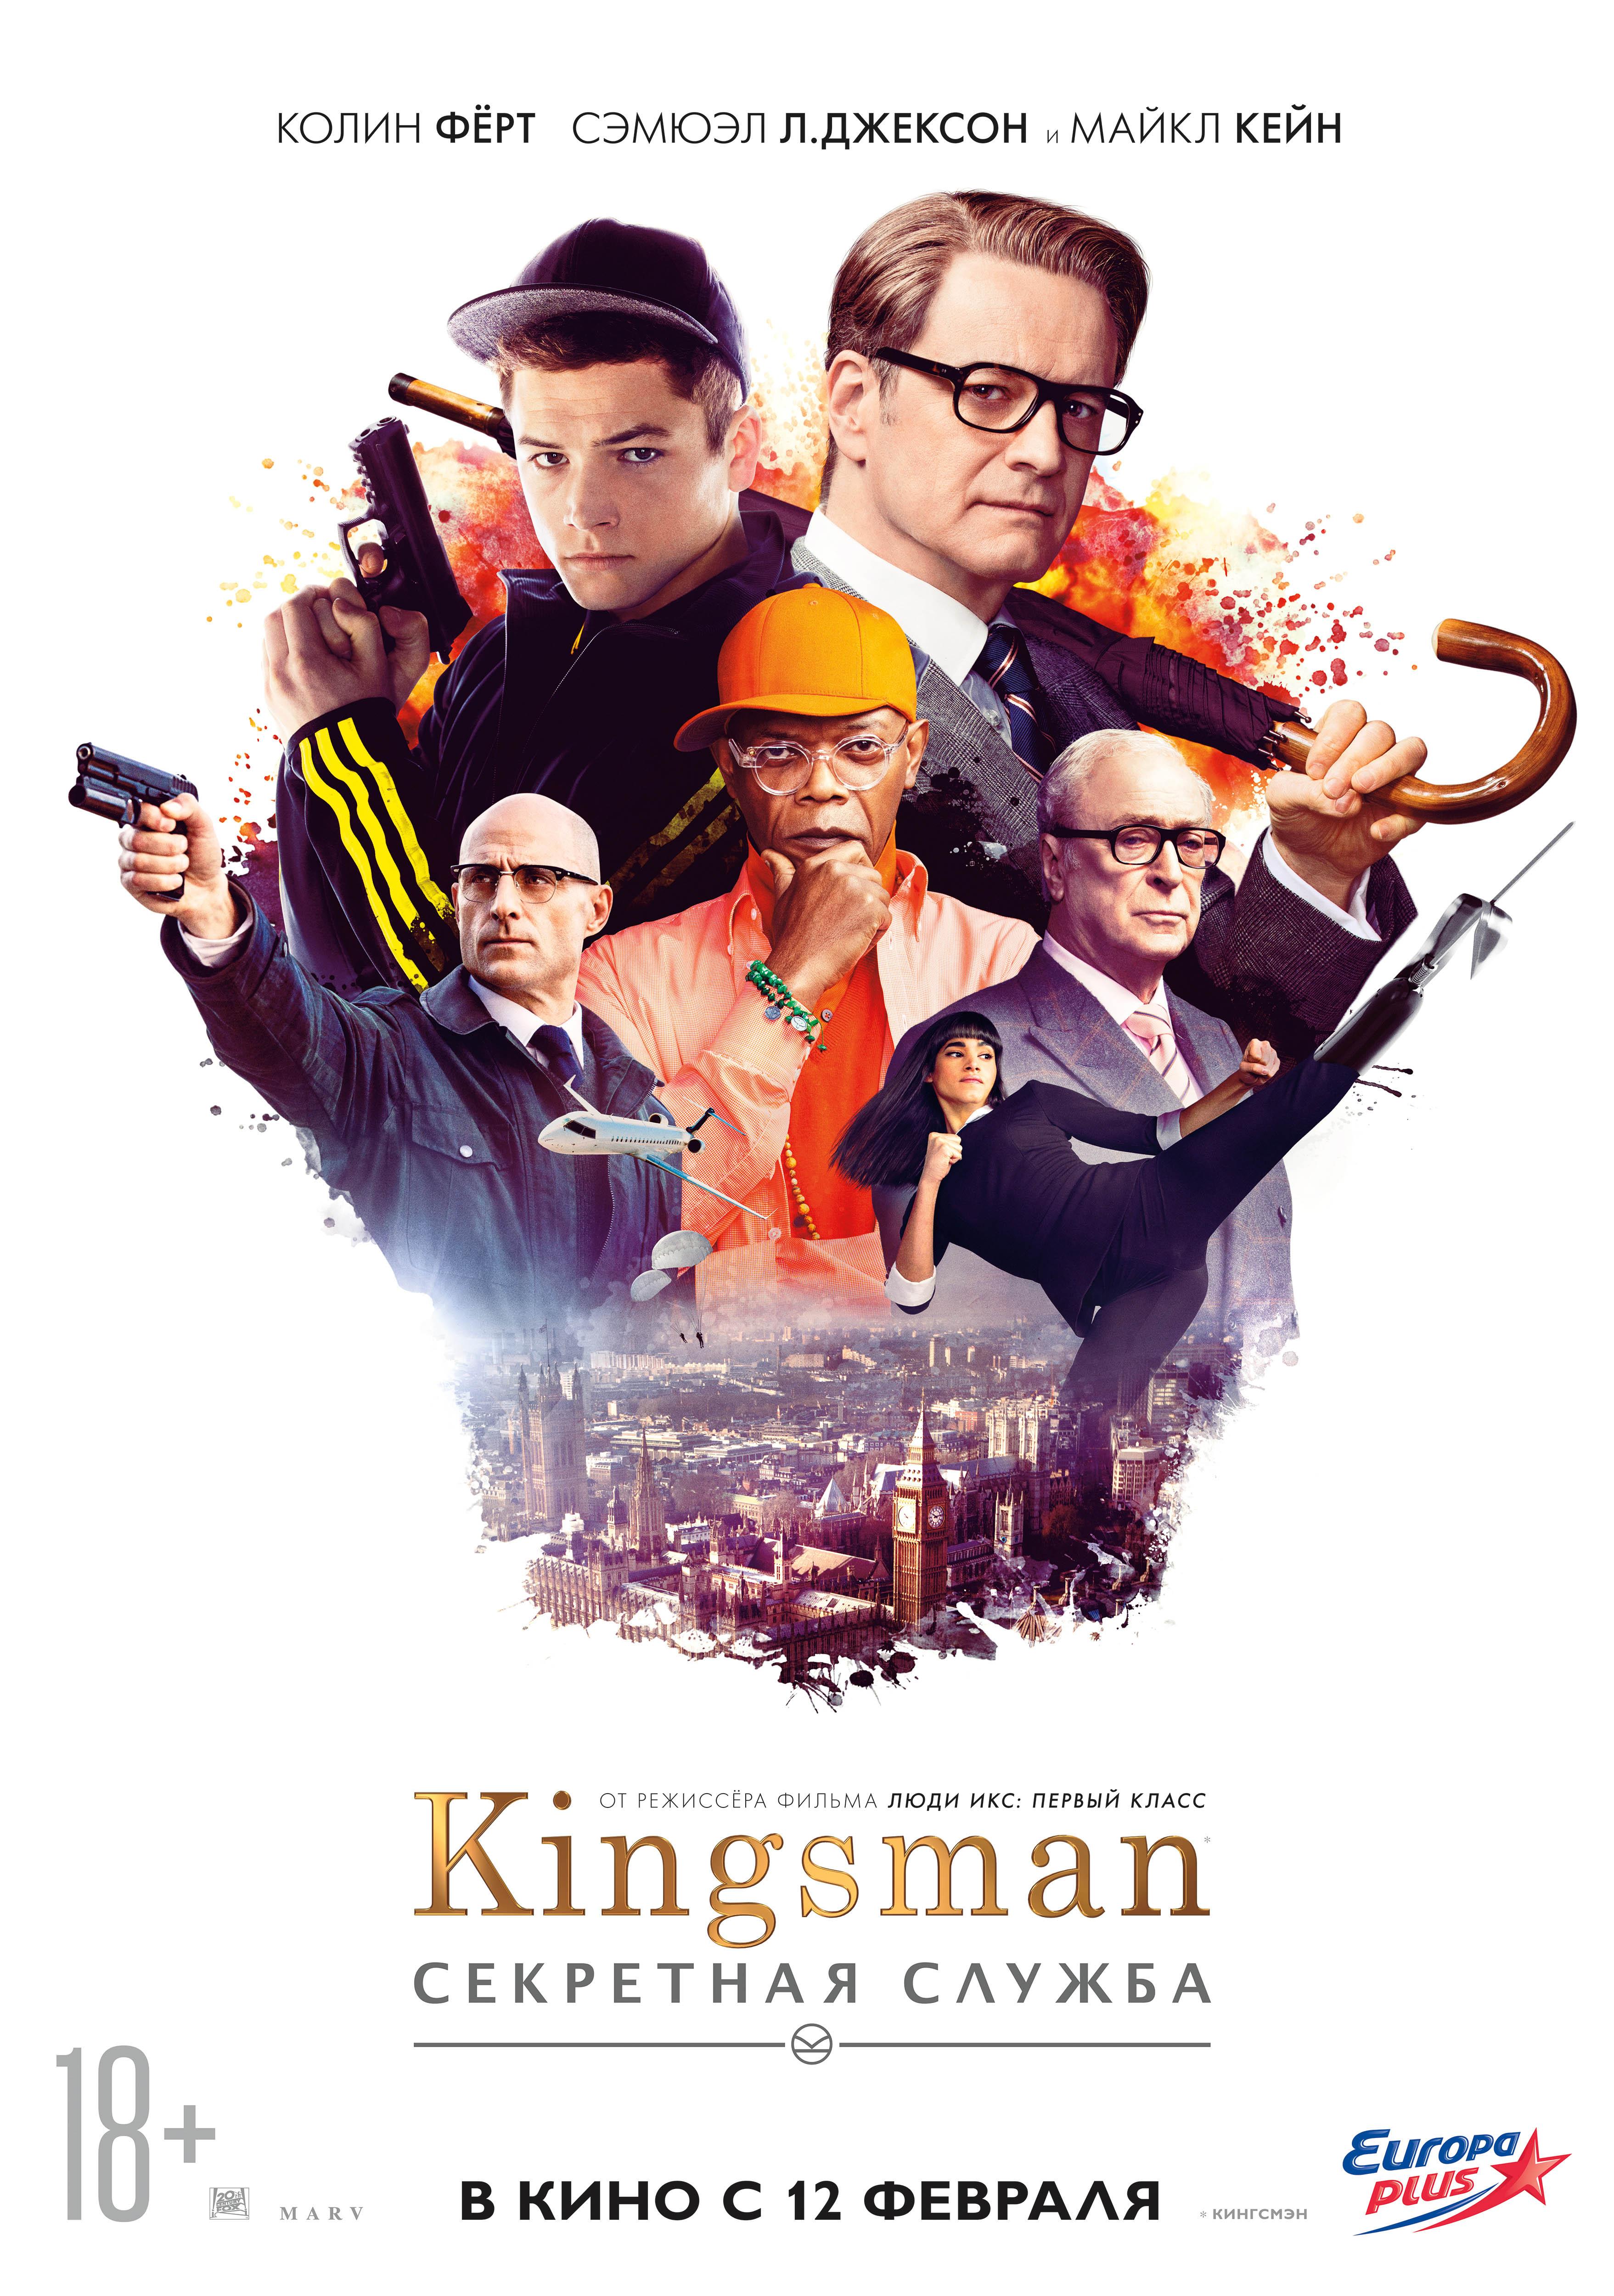 Постер - Kingsman: Секретная служба: 3515x5000 / 1494.15 Кб